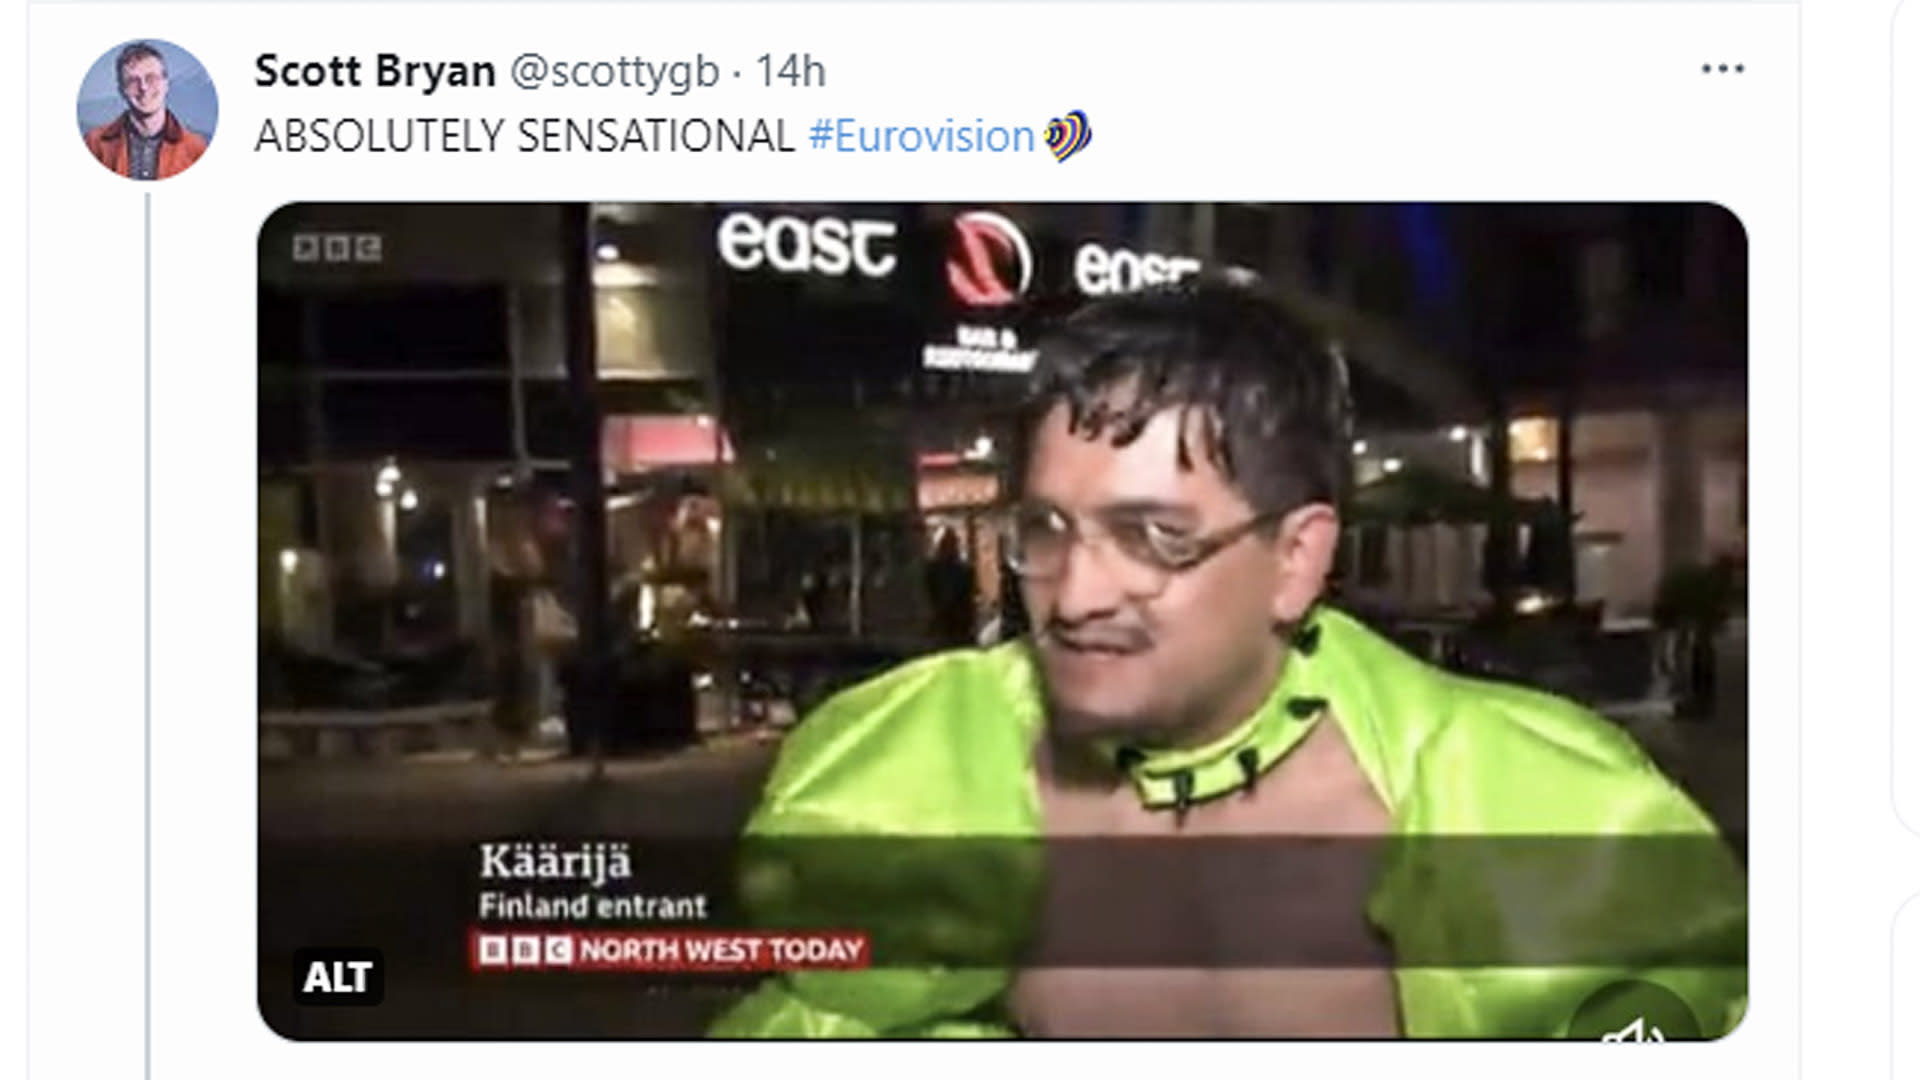 Die BBC verwechselt den in Boleros gekleideten Käärijä-Fan mit Käärijä